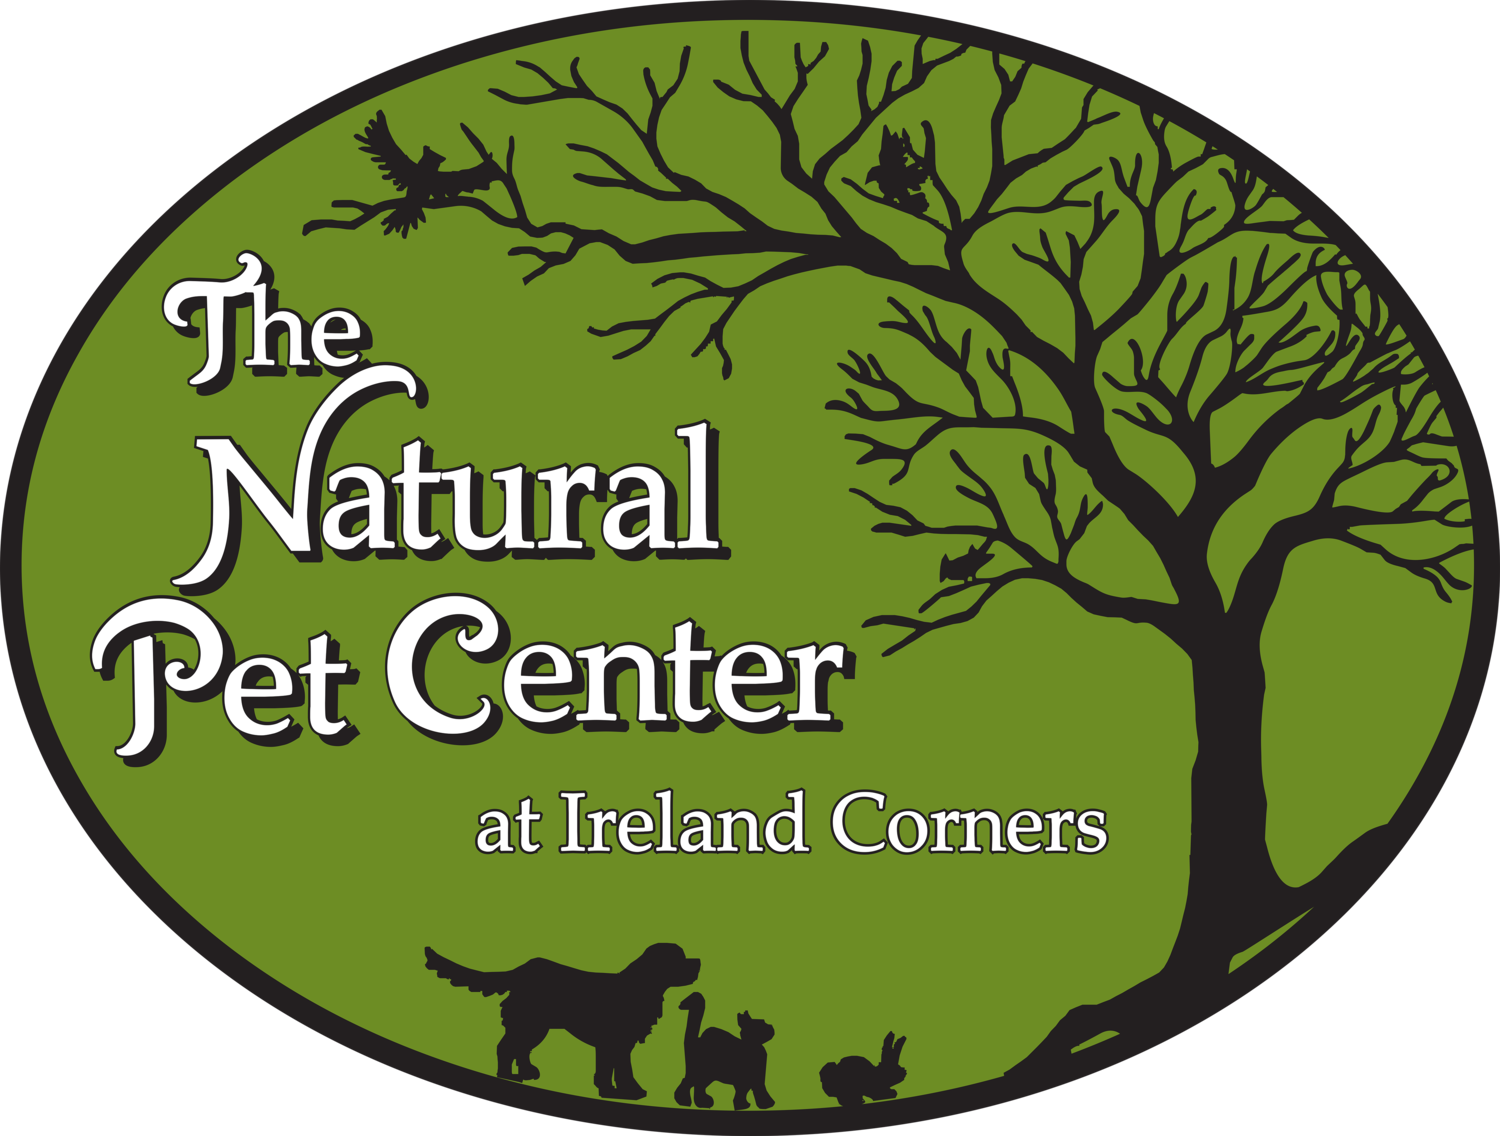 The Natural Pet Center